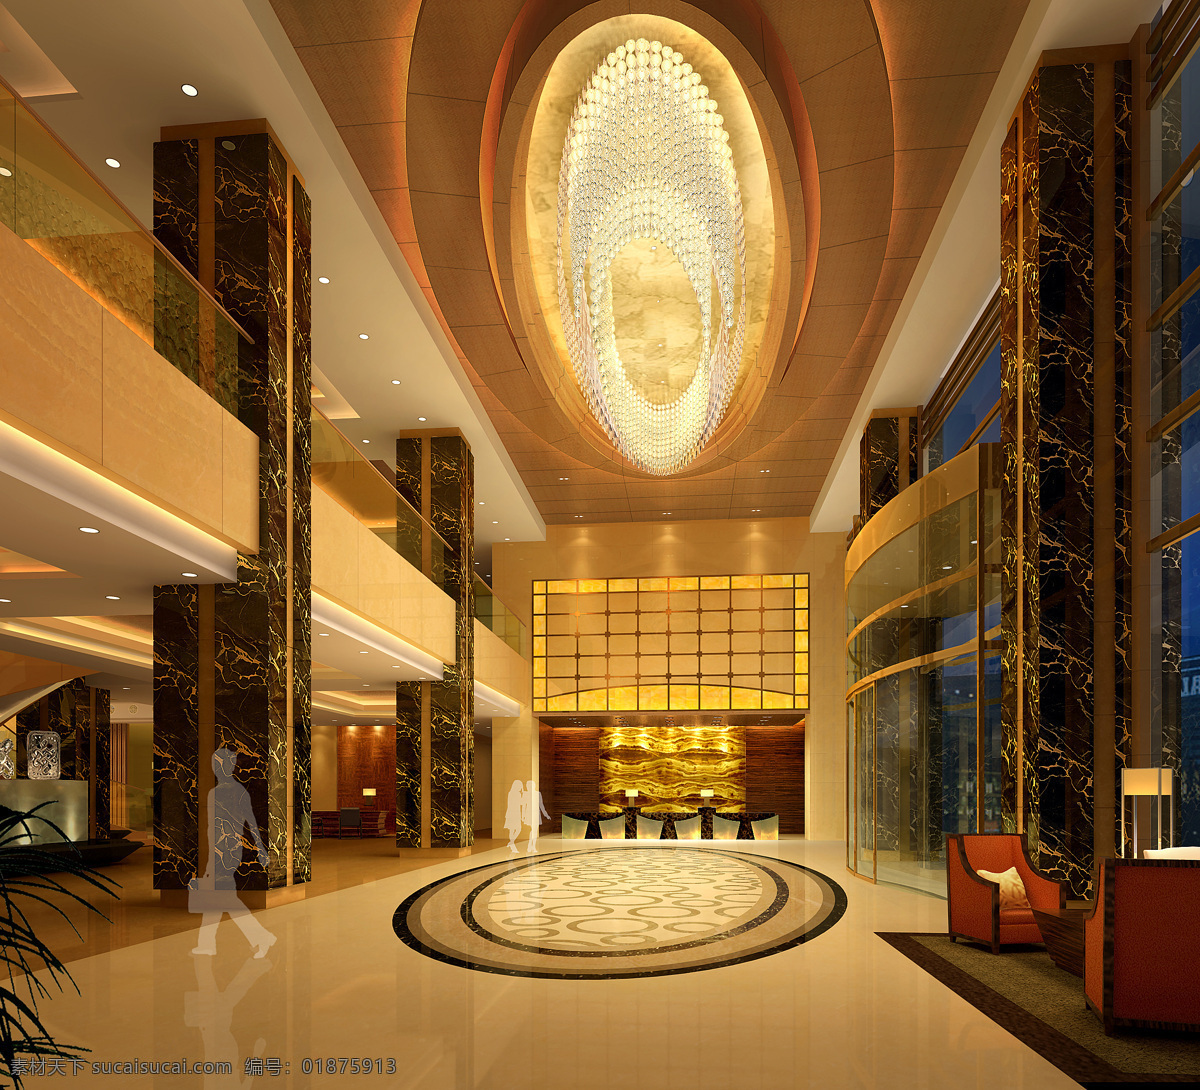 环境设计 酒店 酒店大厅 大厅 效果图 室内设计 设计素材 模板下载 4星级酒店 3星级酒店 家居装饰素材